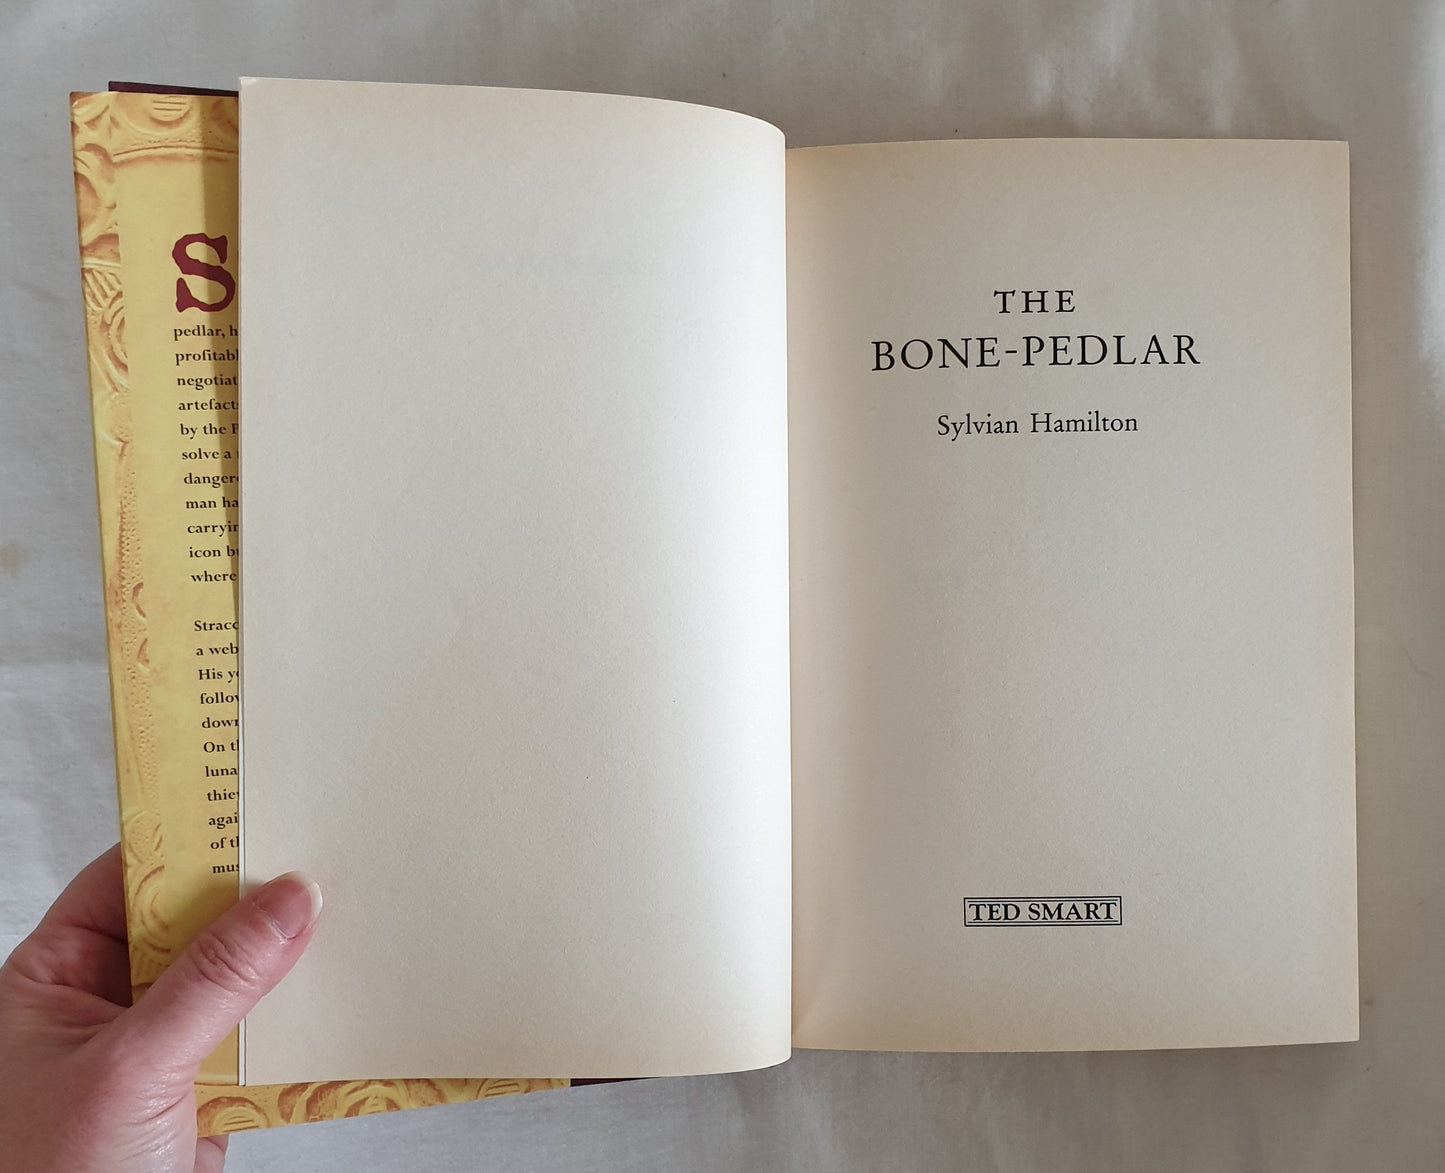 The Bone-Pedlar by Sylvian Hamilton